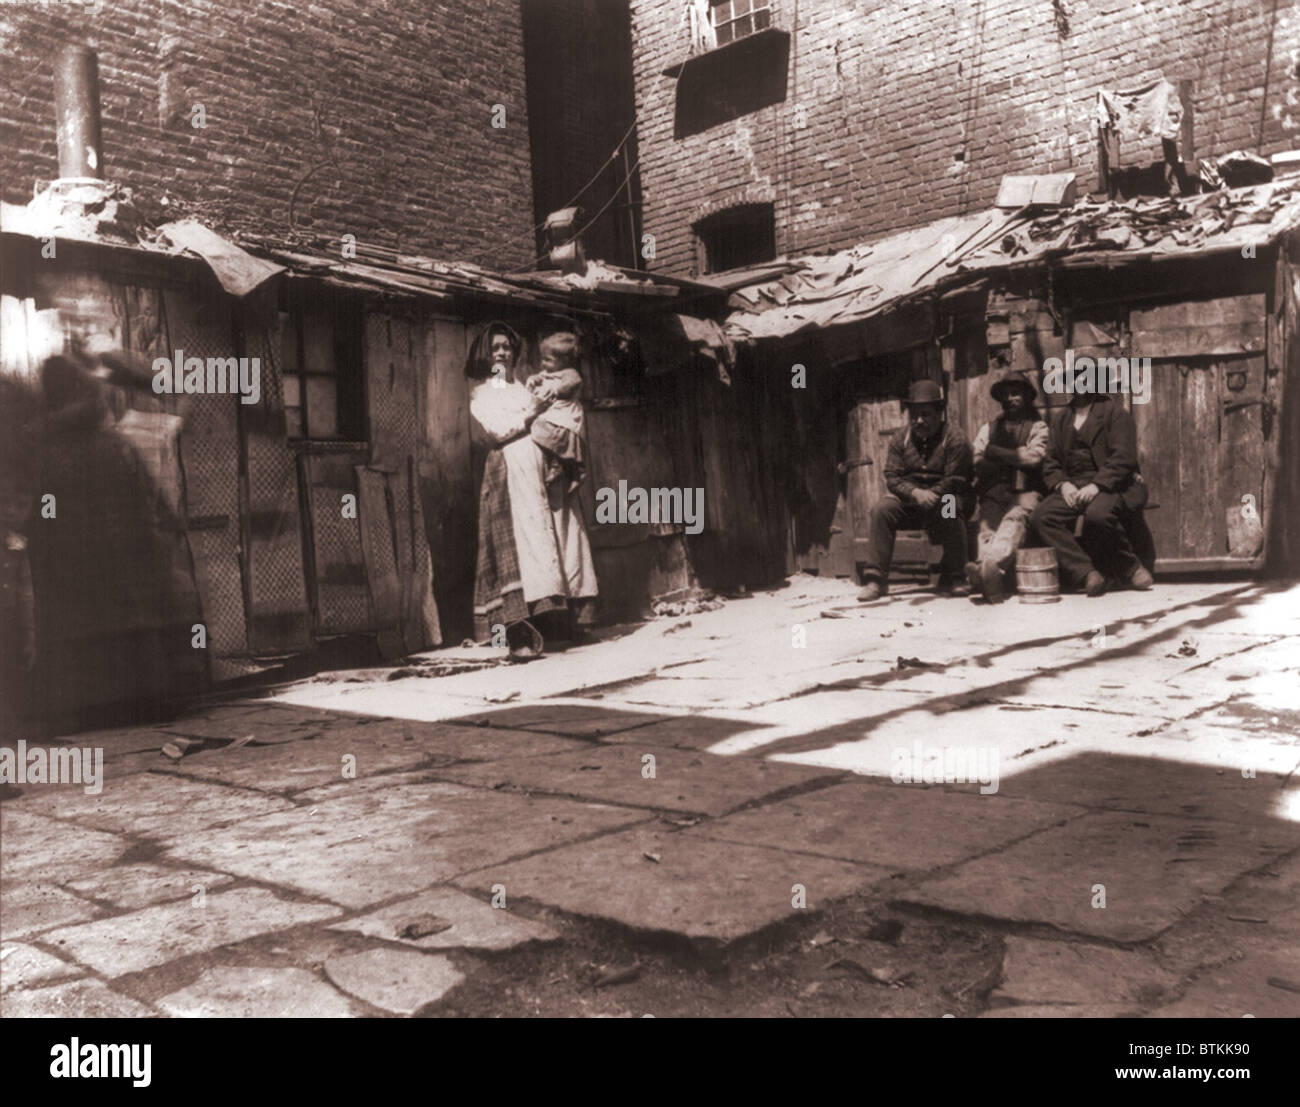 Cour pavée avec les lignes des latrines en plein air dans l'une des pires bidonvilles sur Jersey Street, où les pauvres italiens immigrants vivaient à New York. 1889 Photographie par Jacob Riis. Banque D'Images